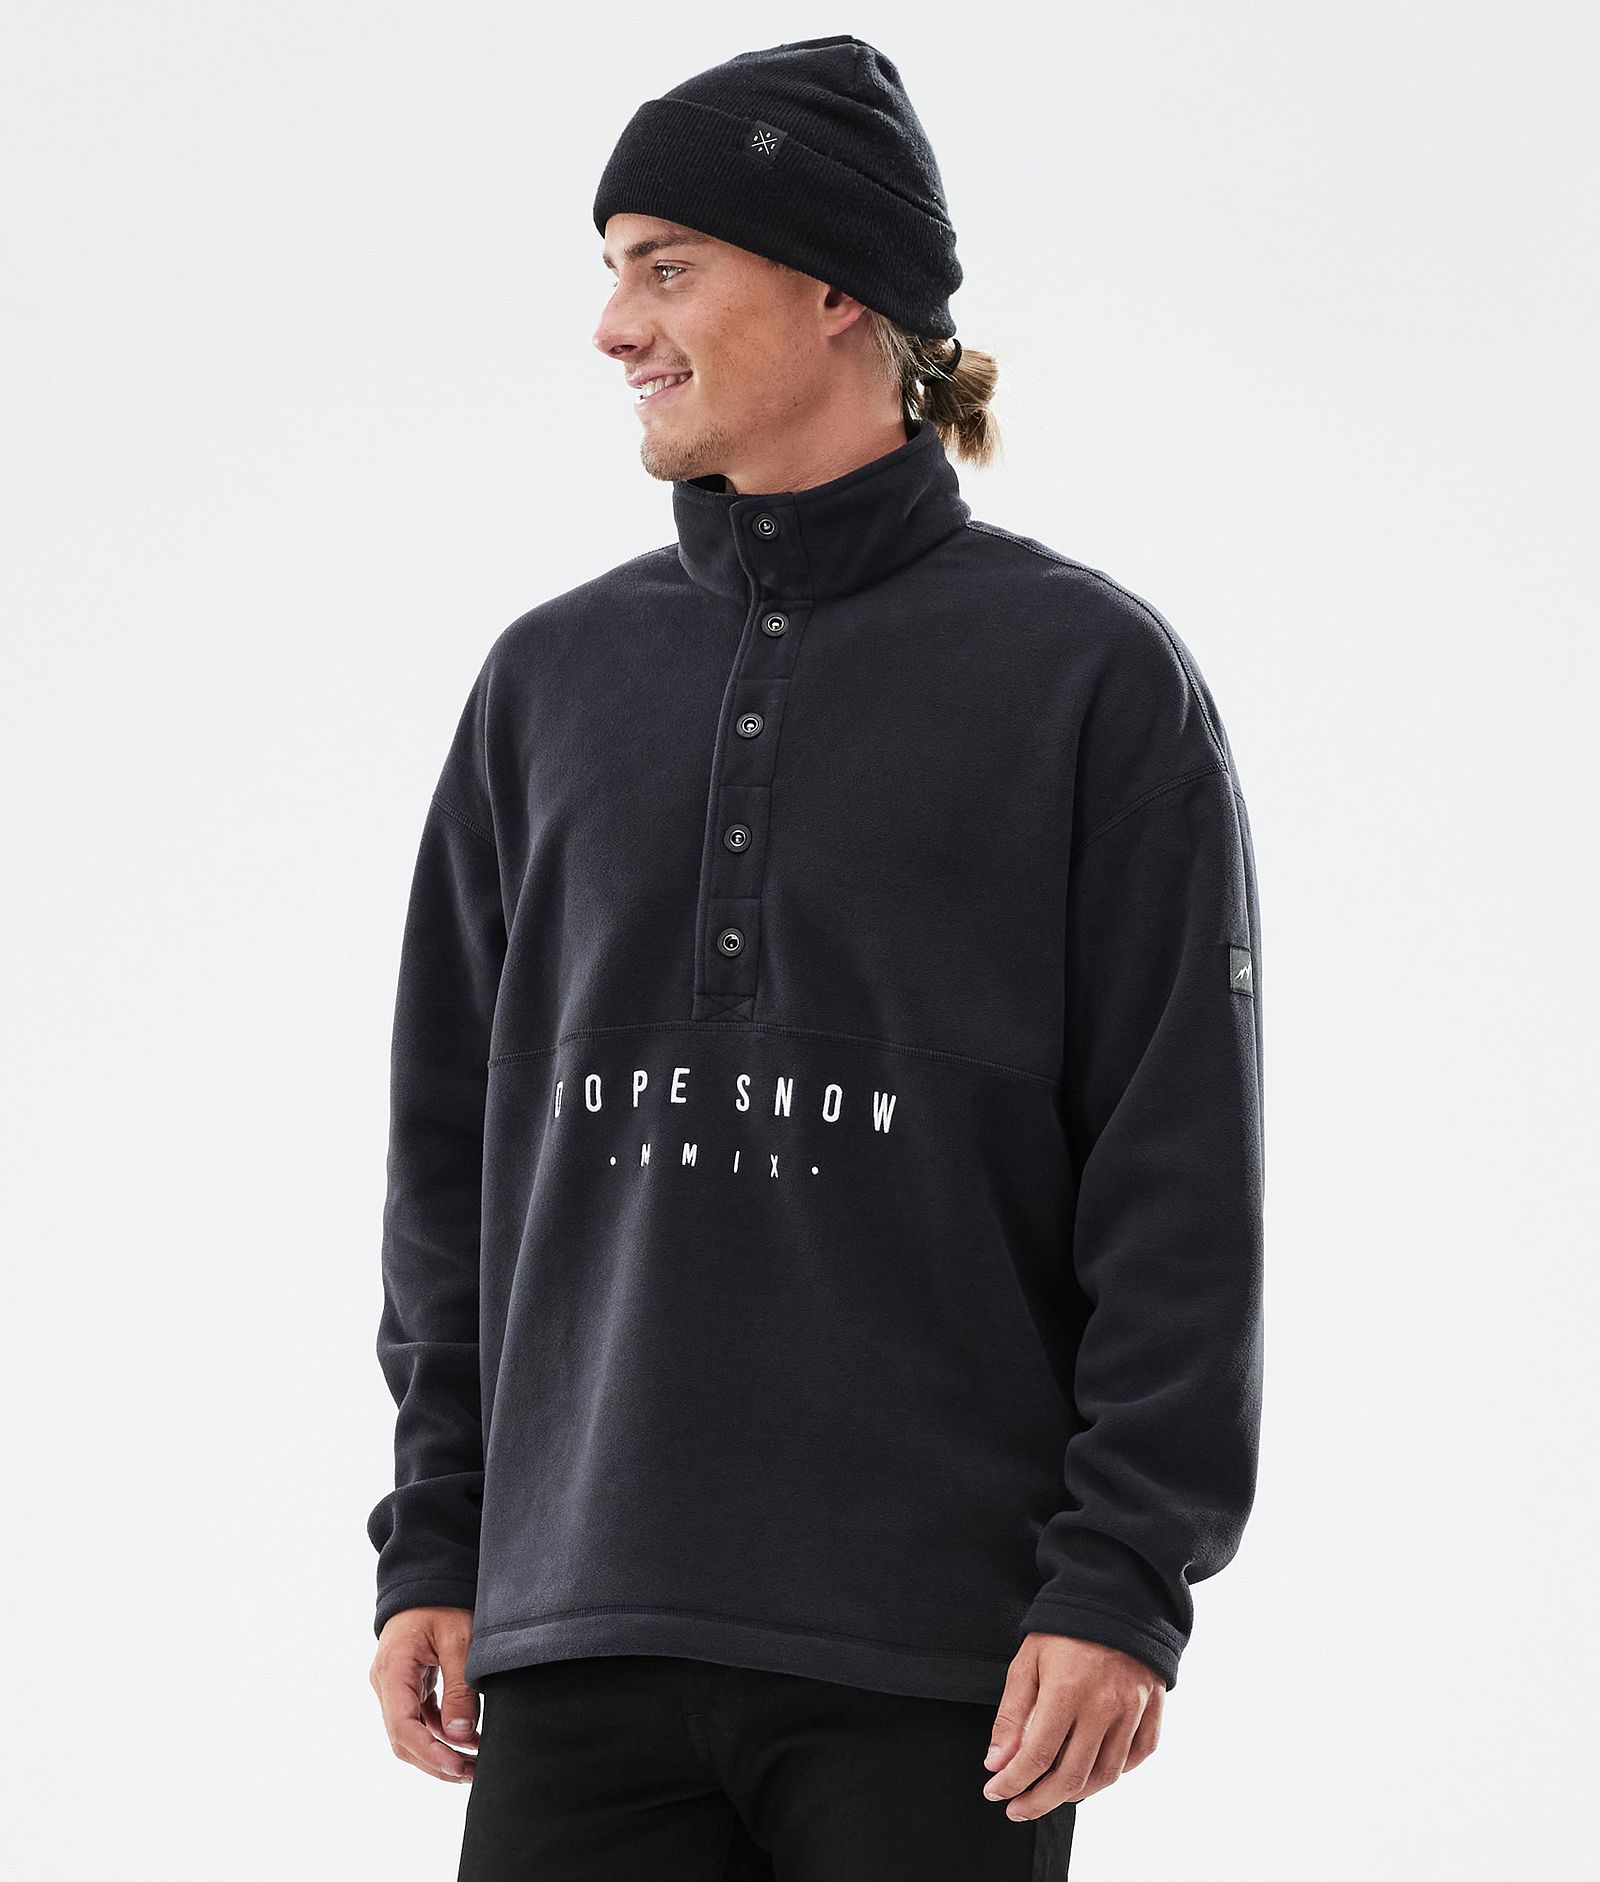 Dope Comfy Fleece Sweater Men Black Renewed, Image 1 of 6